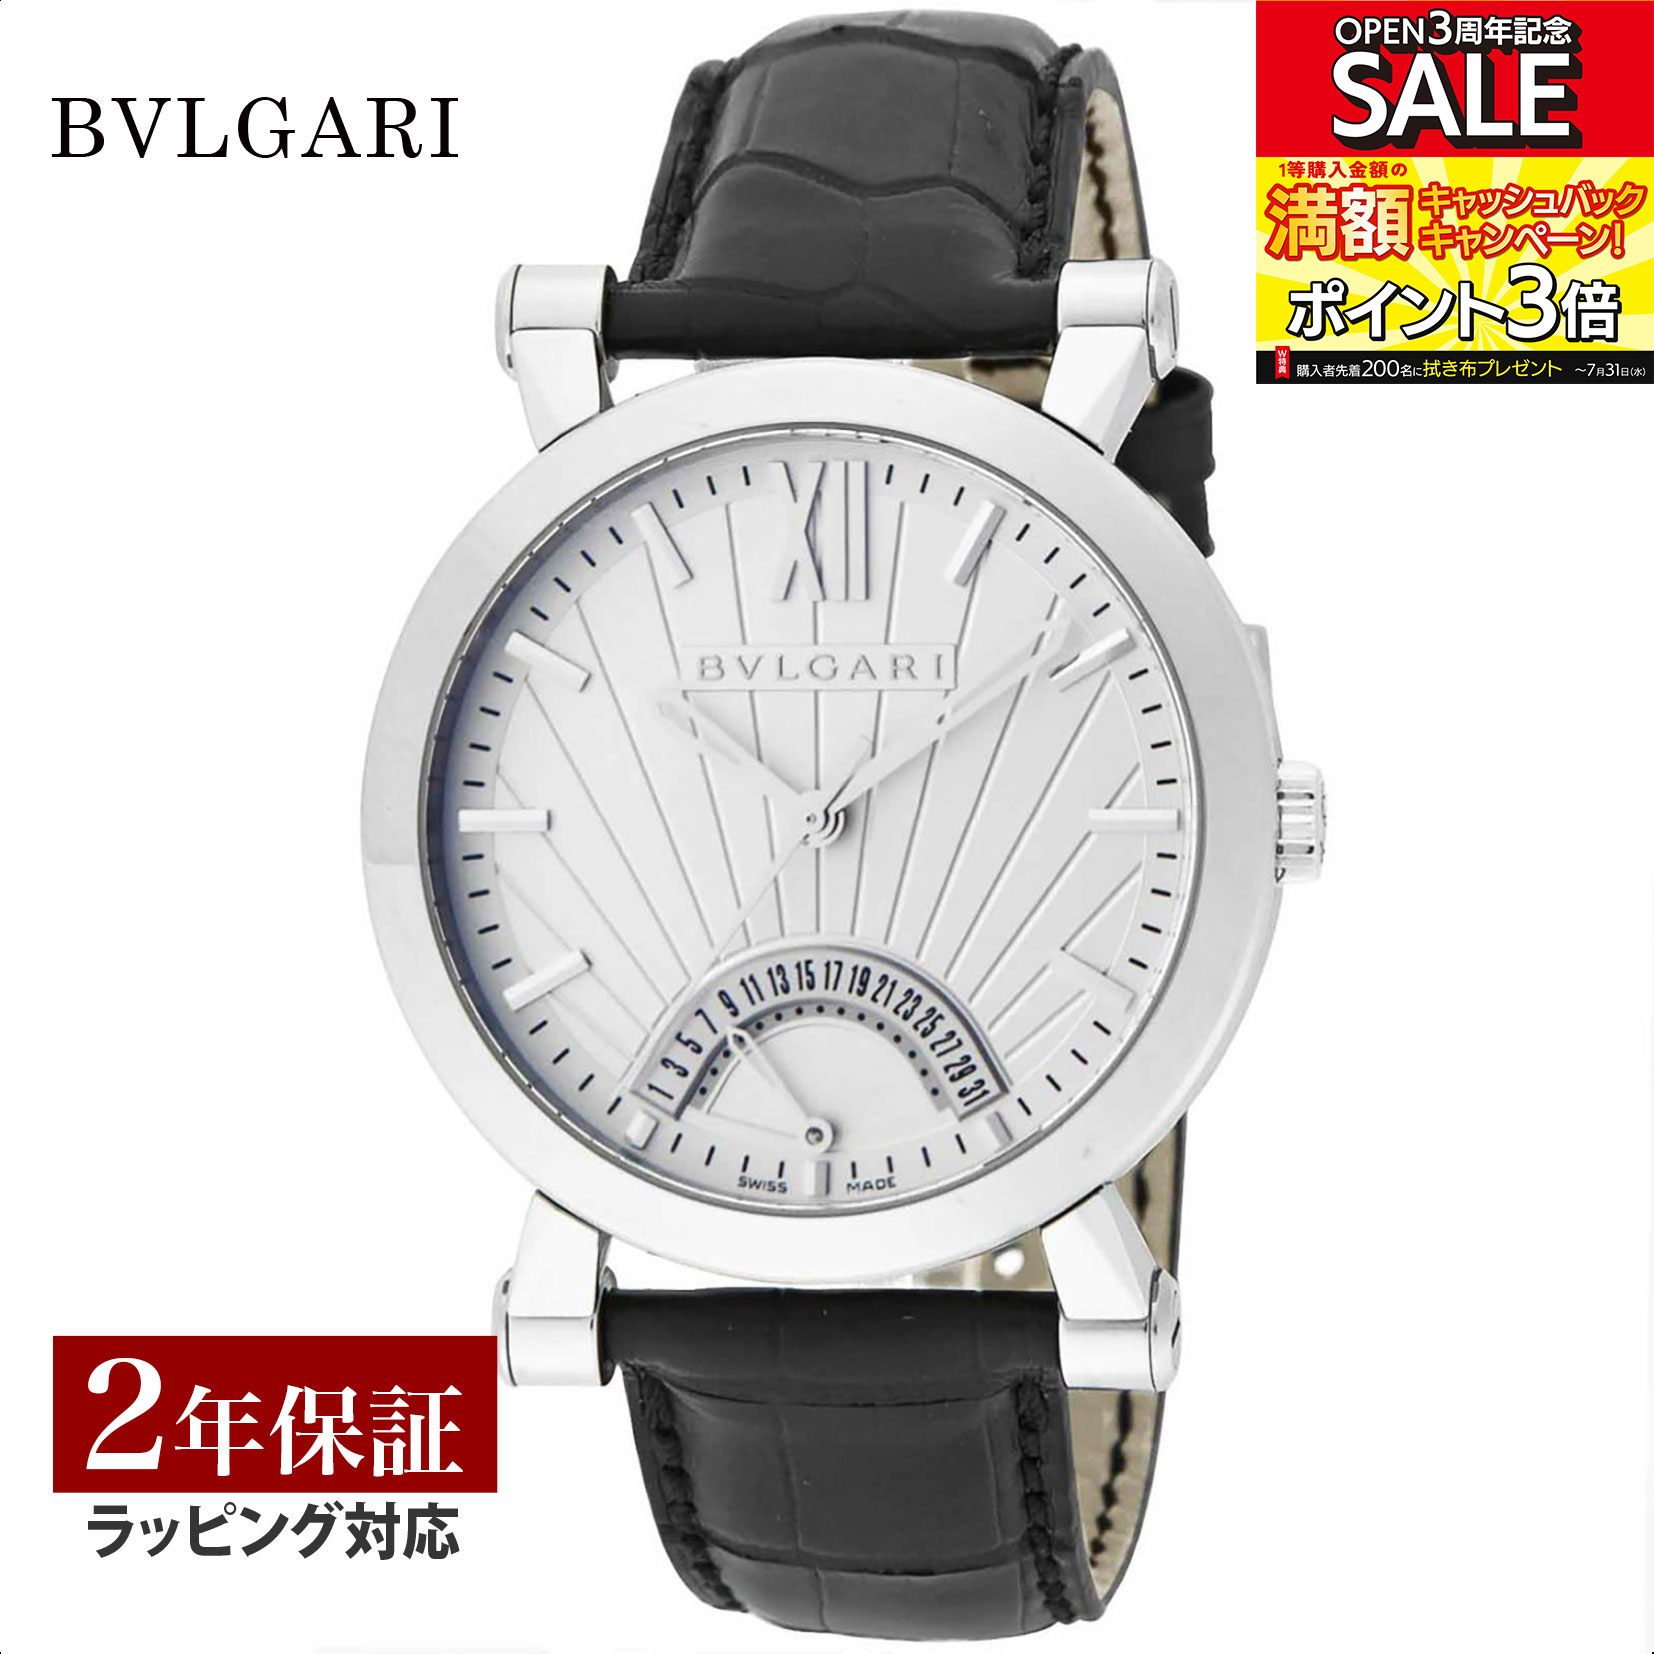 ブルガリブルガリ 腕時計（メンズ） 【レビューでブルガリランチ券】ブルガリ BVLGARI メンズ 時計 Bvlgari Bvlgari ブルガリブルガリ 自動巻 ホワイト SB42WSLDR 時計 腕時計 高級腕時計 ブランド 【ローン金利無料】